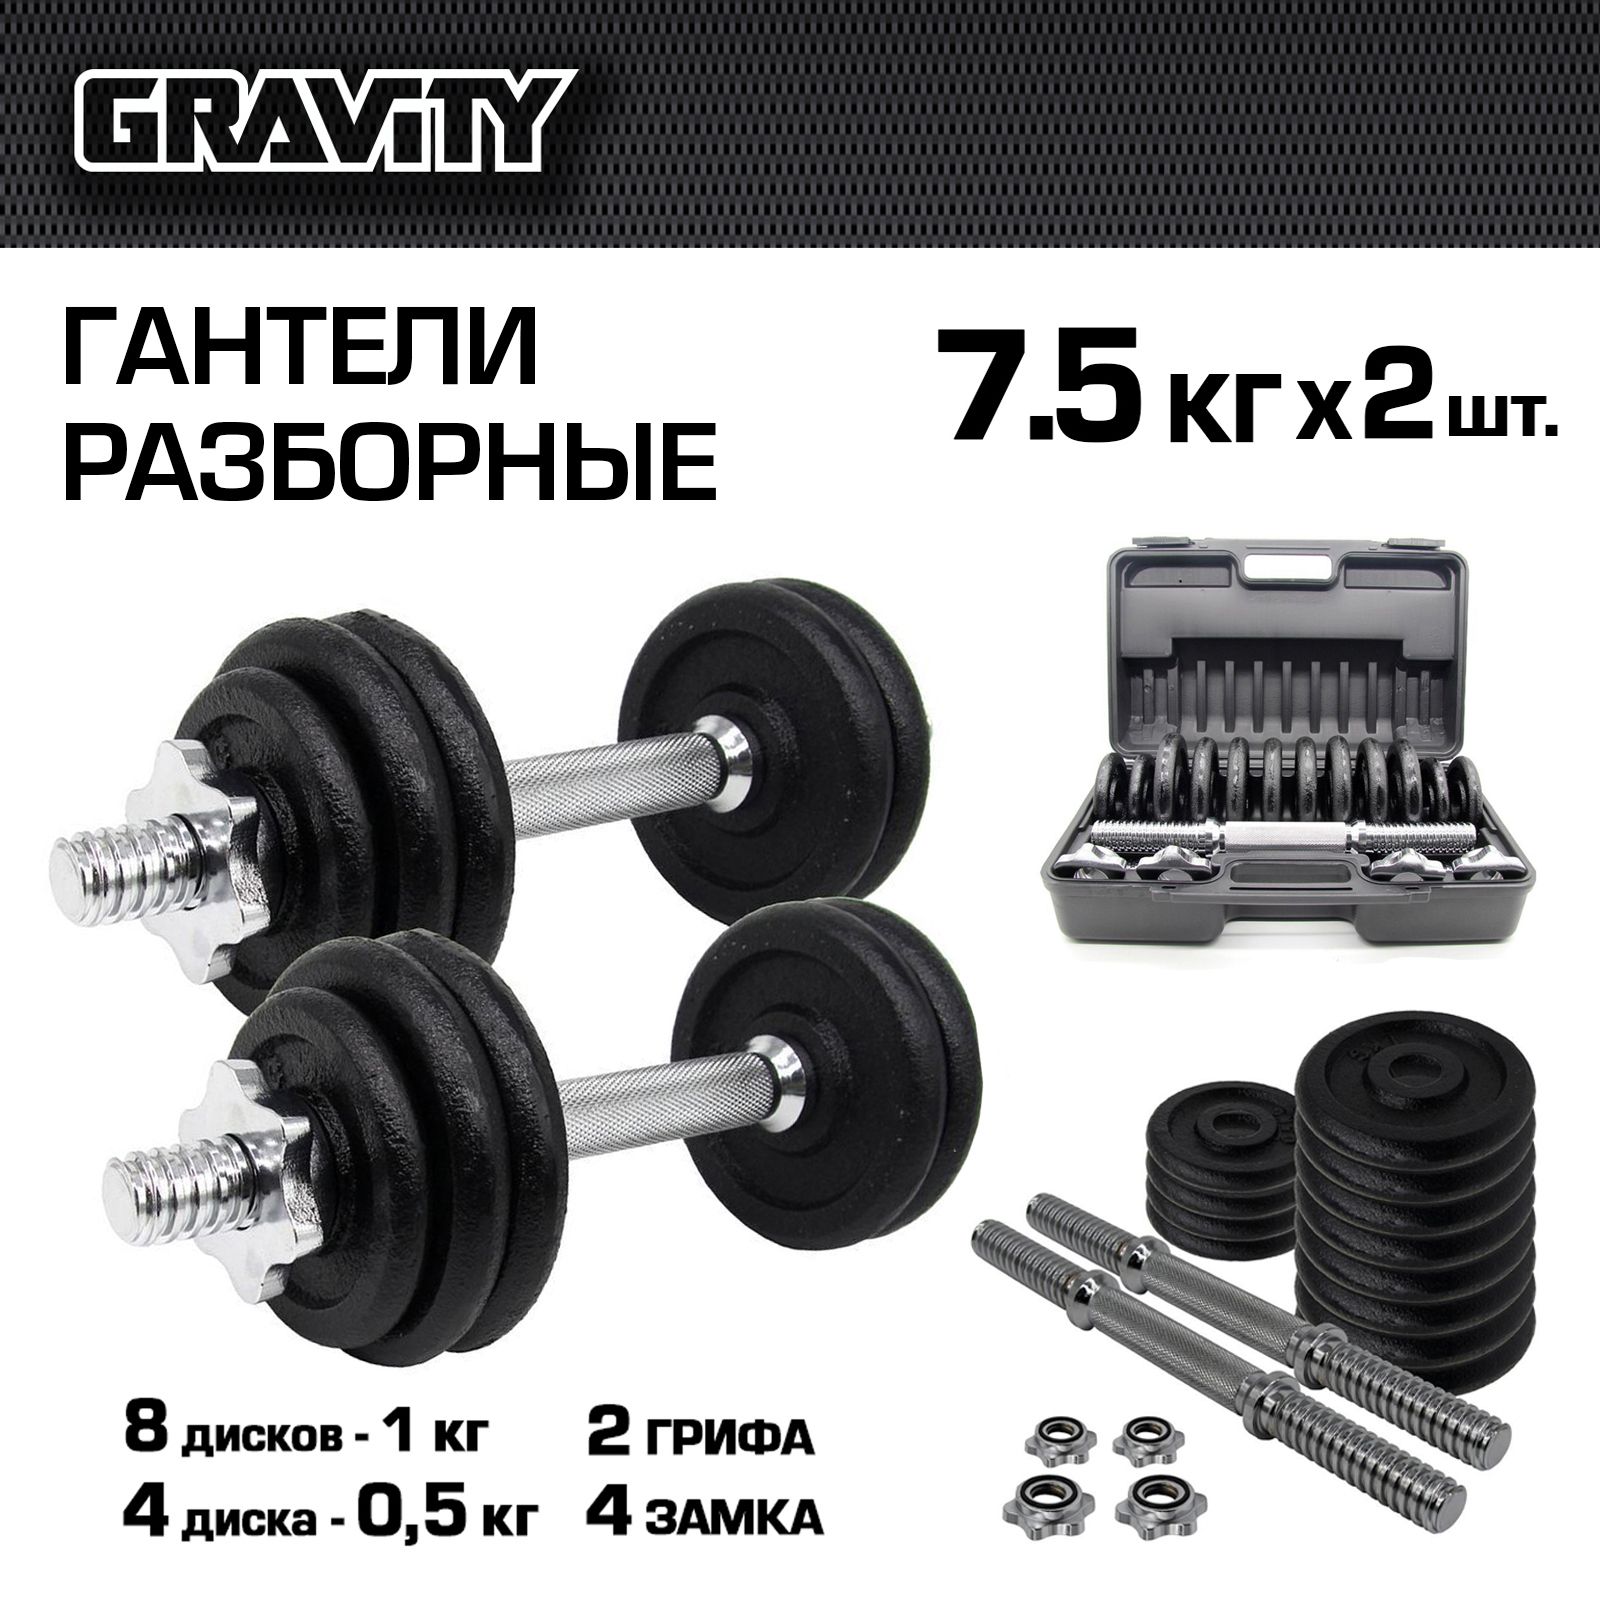 Разборные гантели Gravity DK4135 2 x 7,5 кг, черный